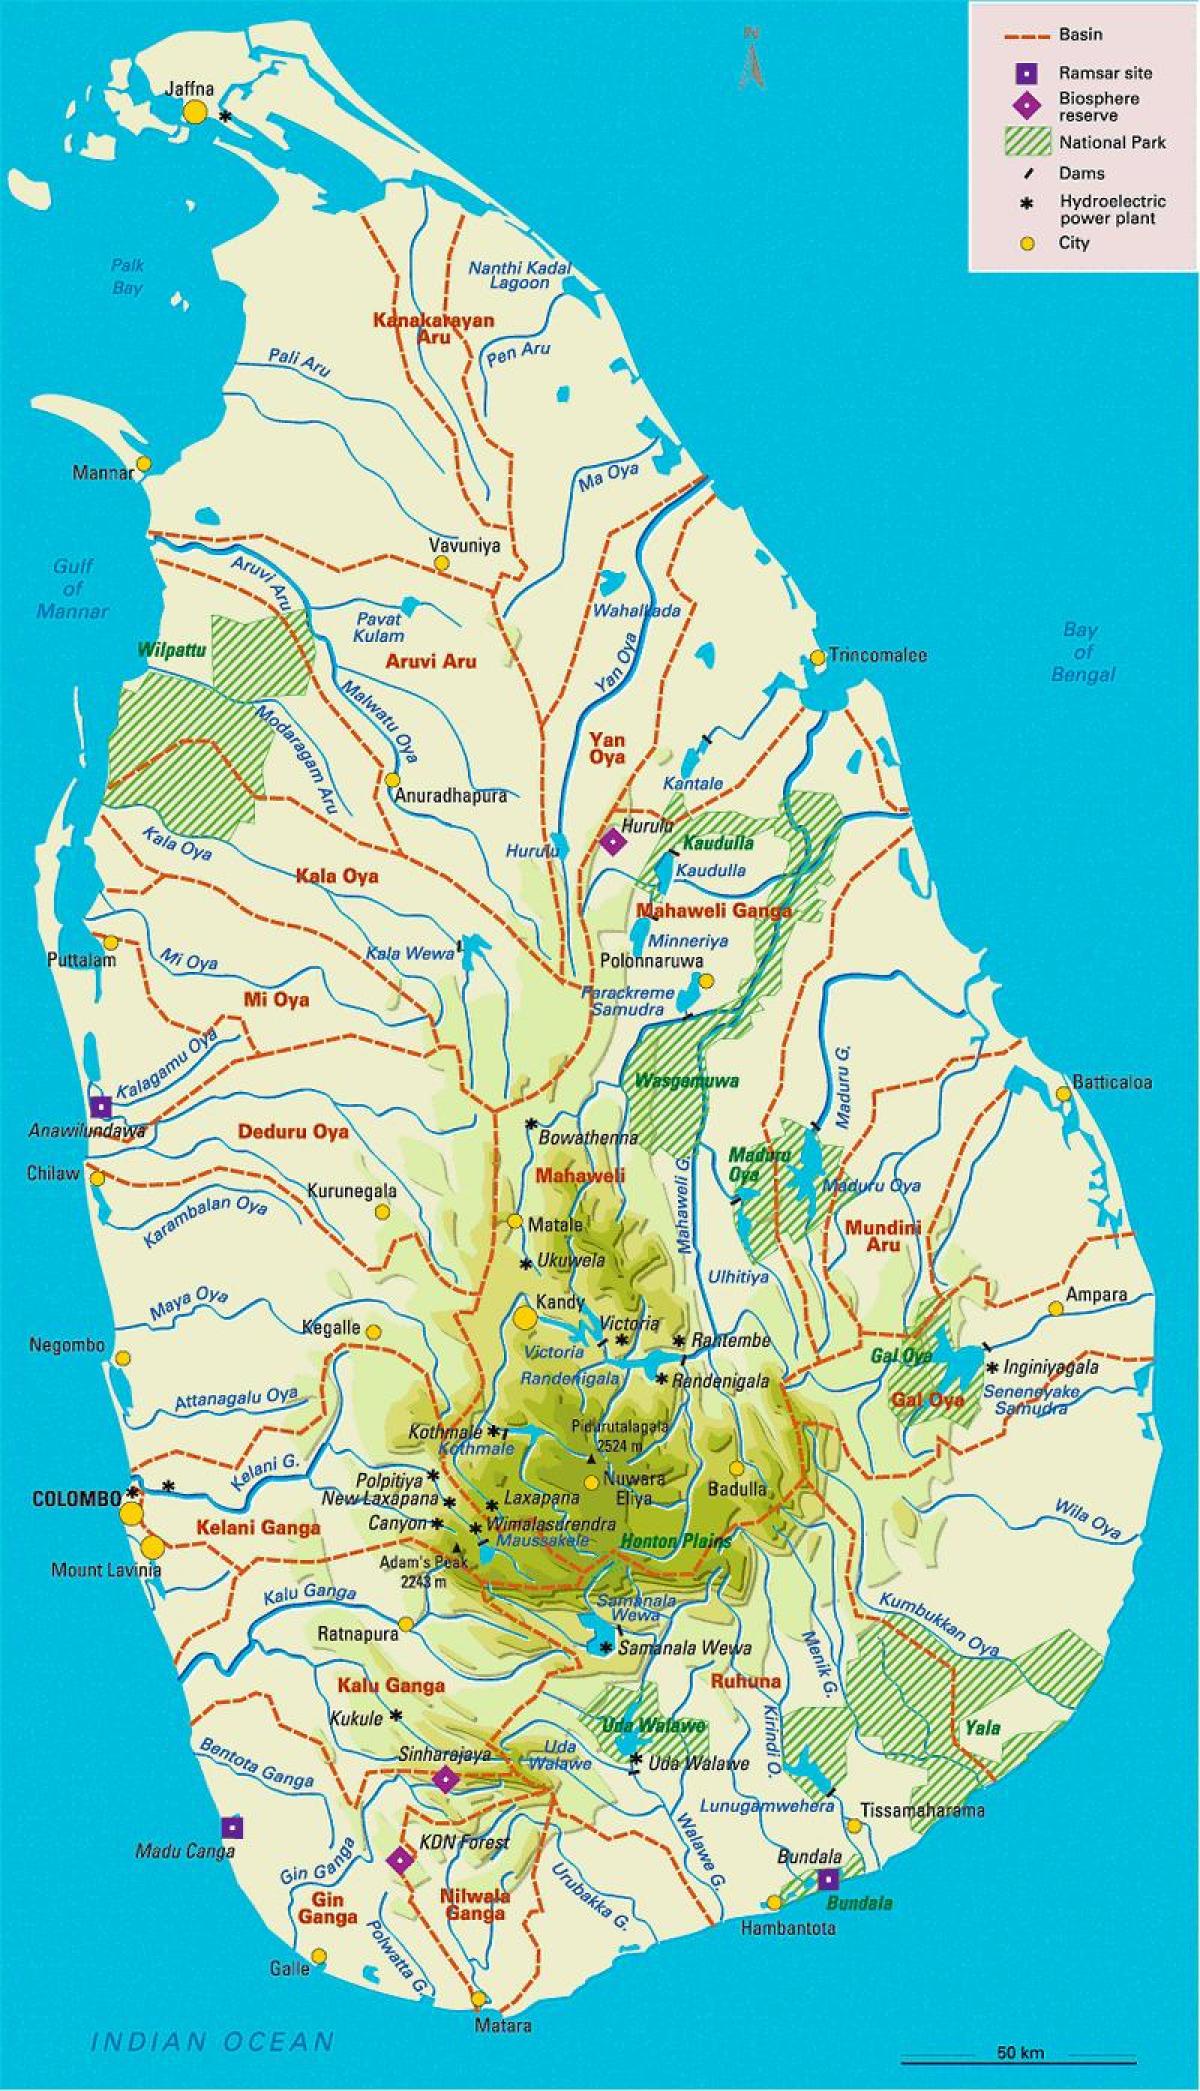 سری لنکا کے دریاؤں کے نقشے میں تامل